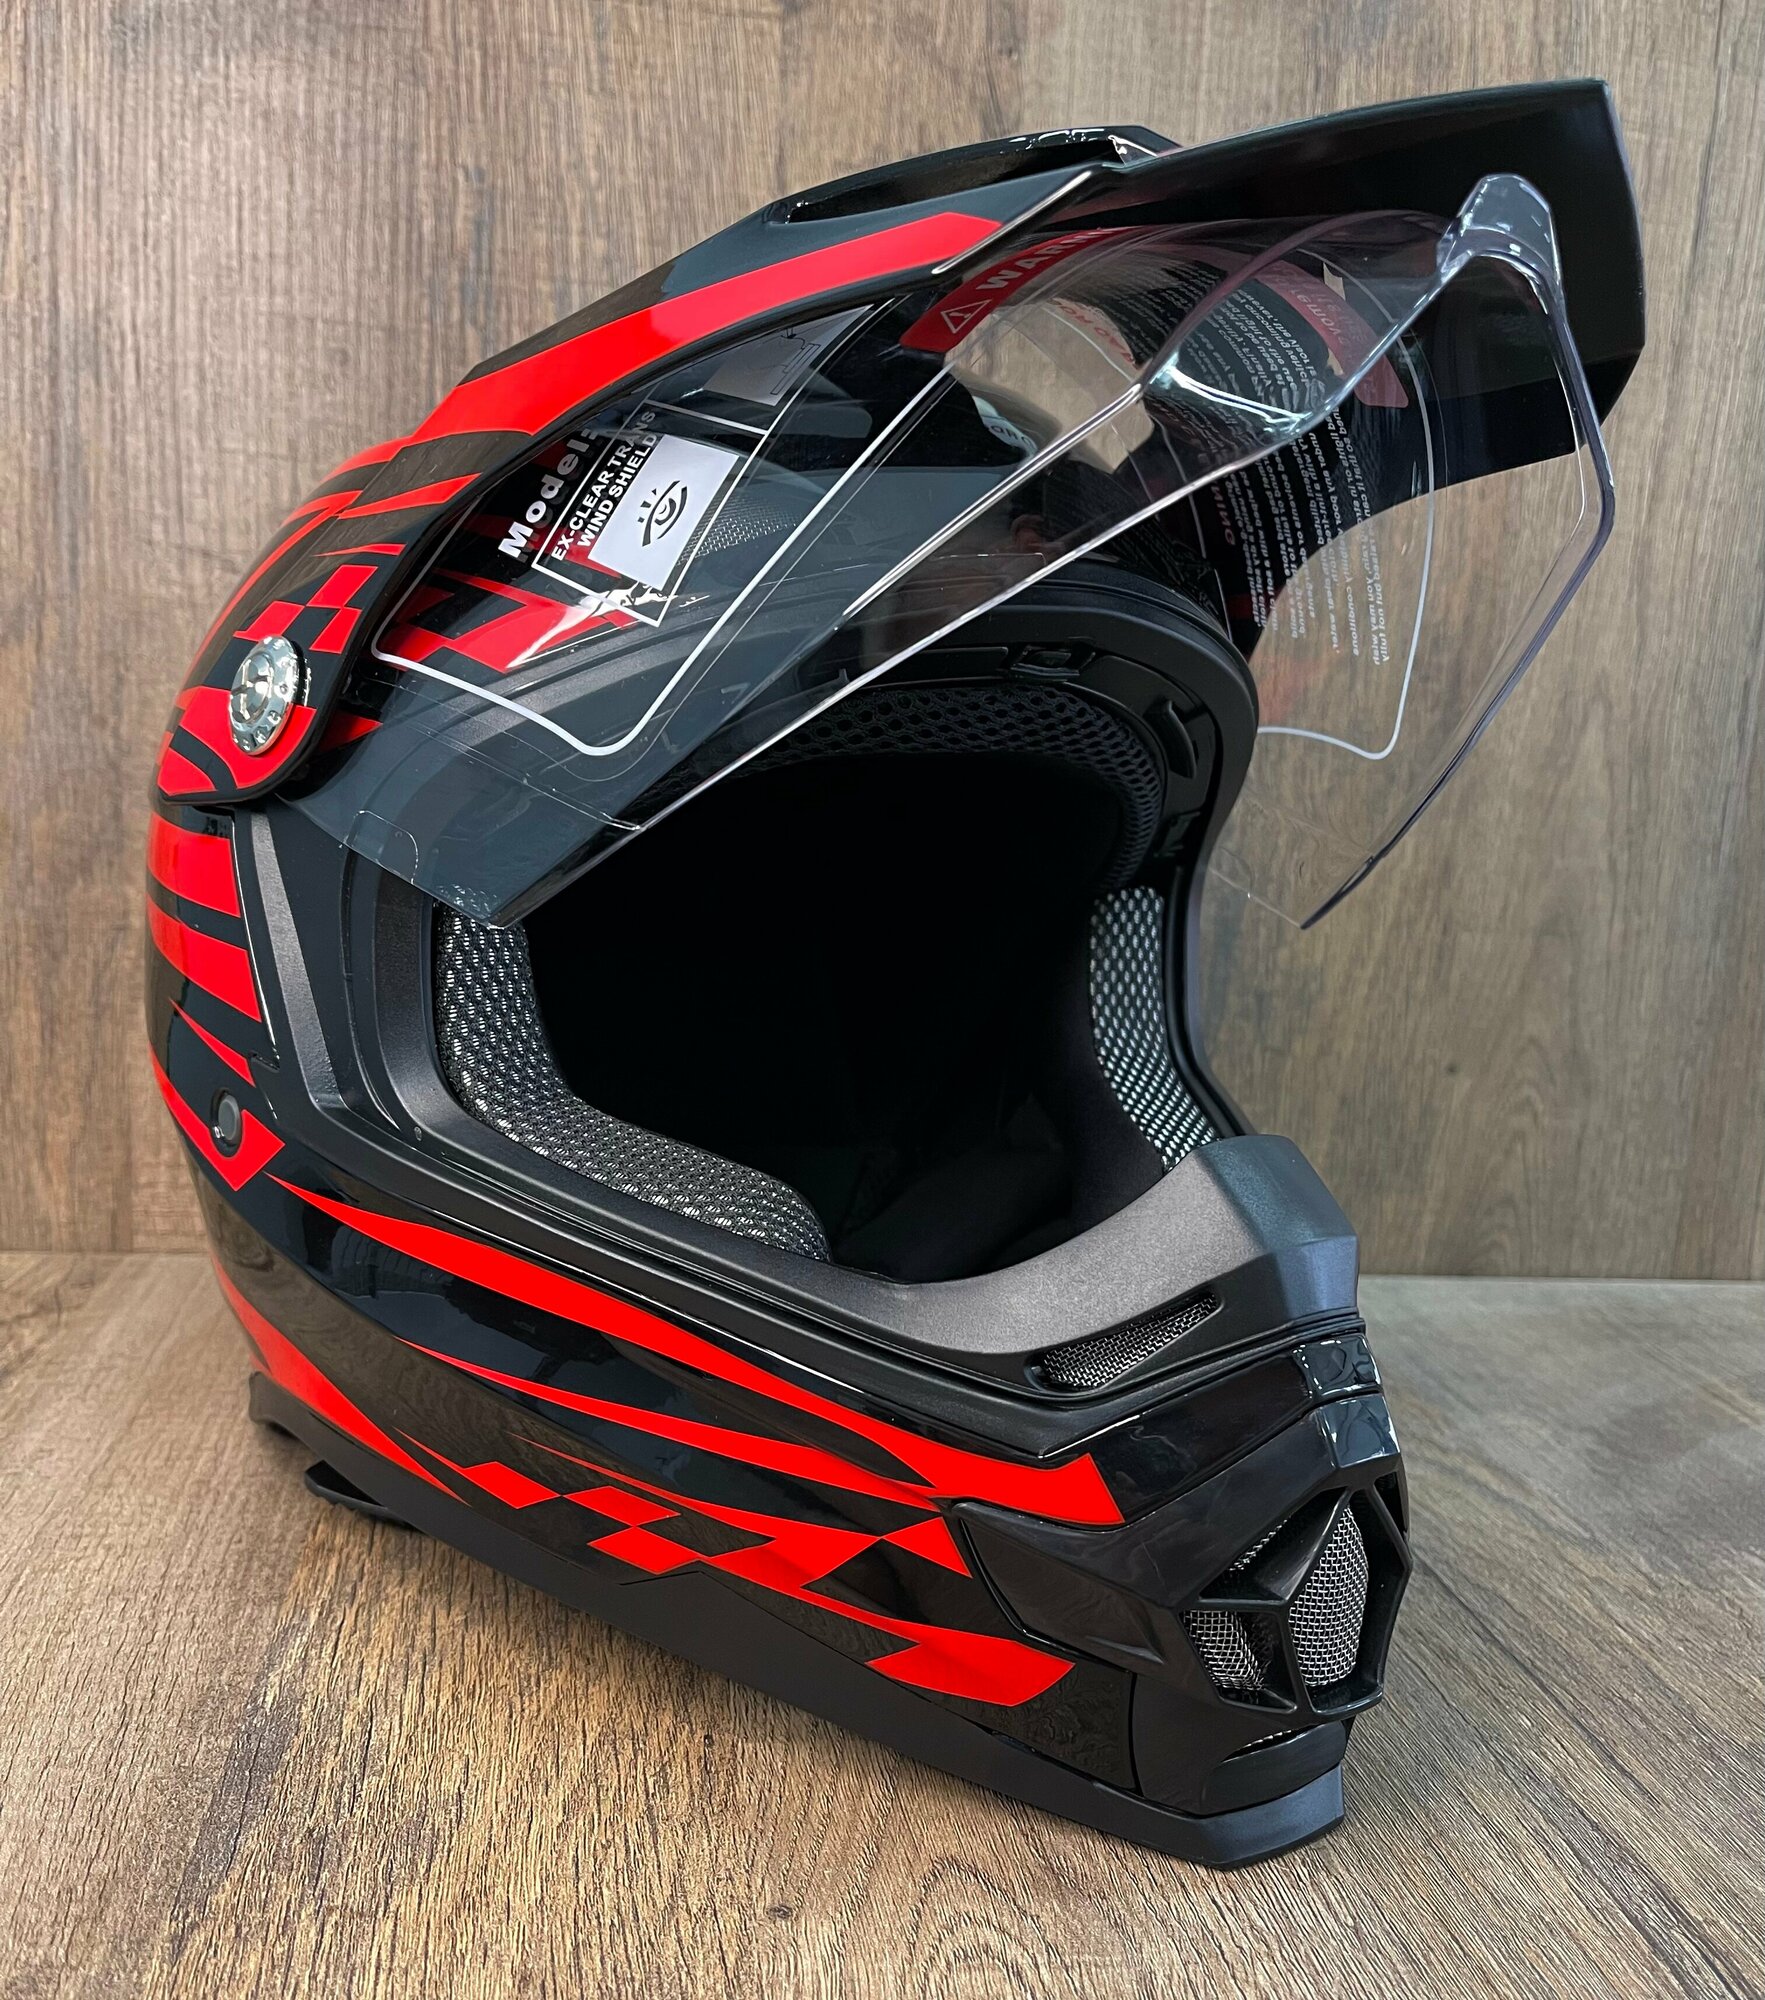 Мотошлем "BLD-819" - кроссовый шлем S от бренда BLD красный